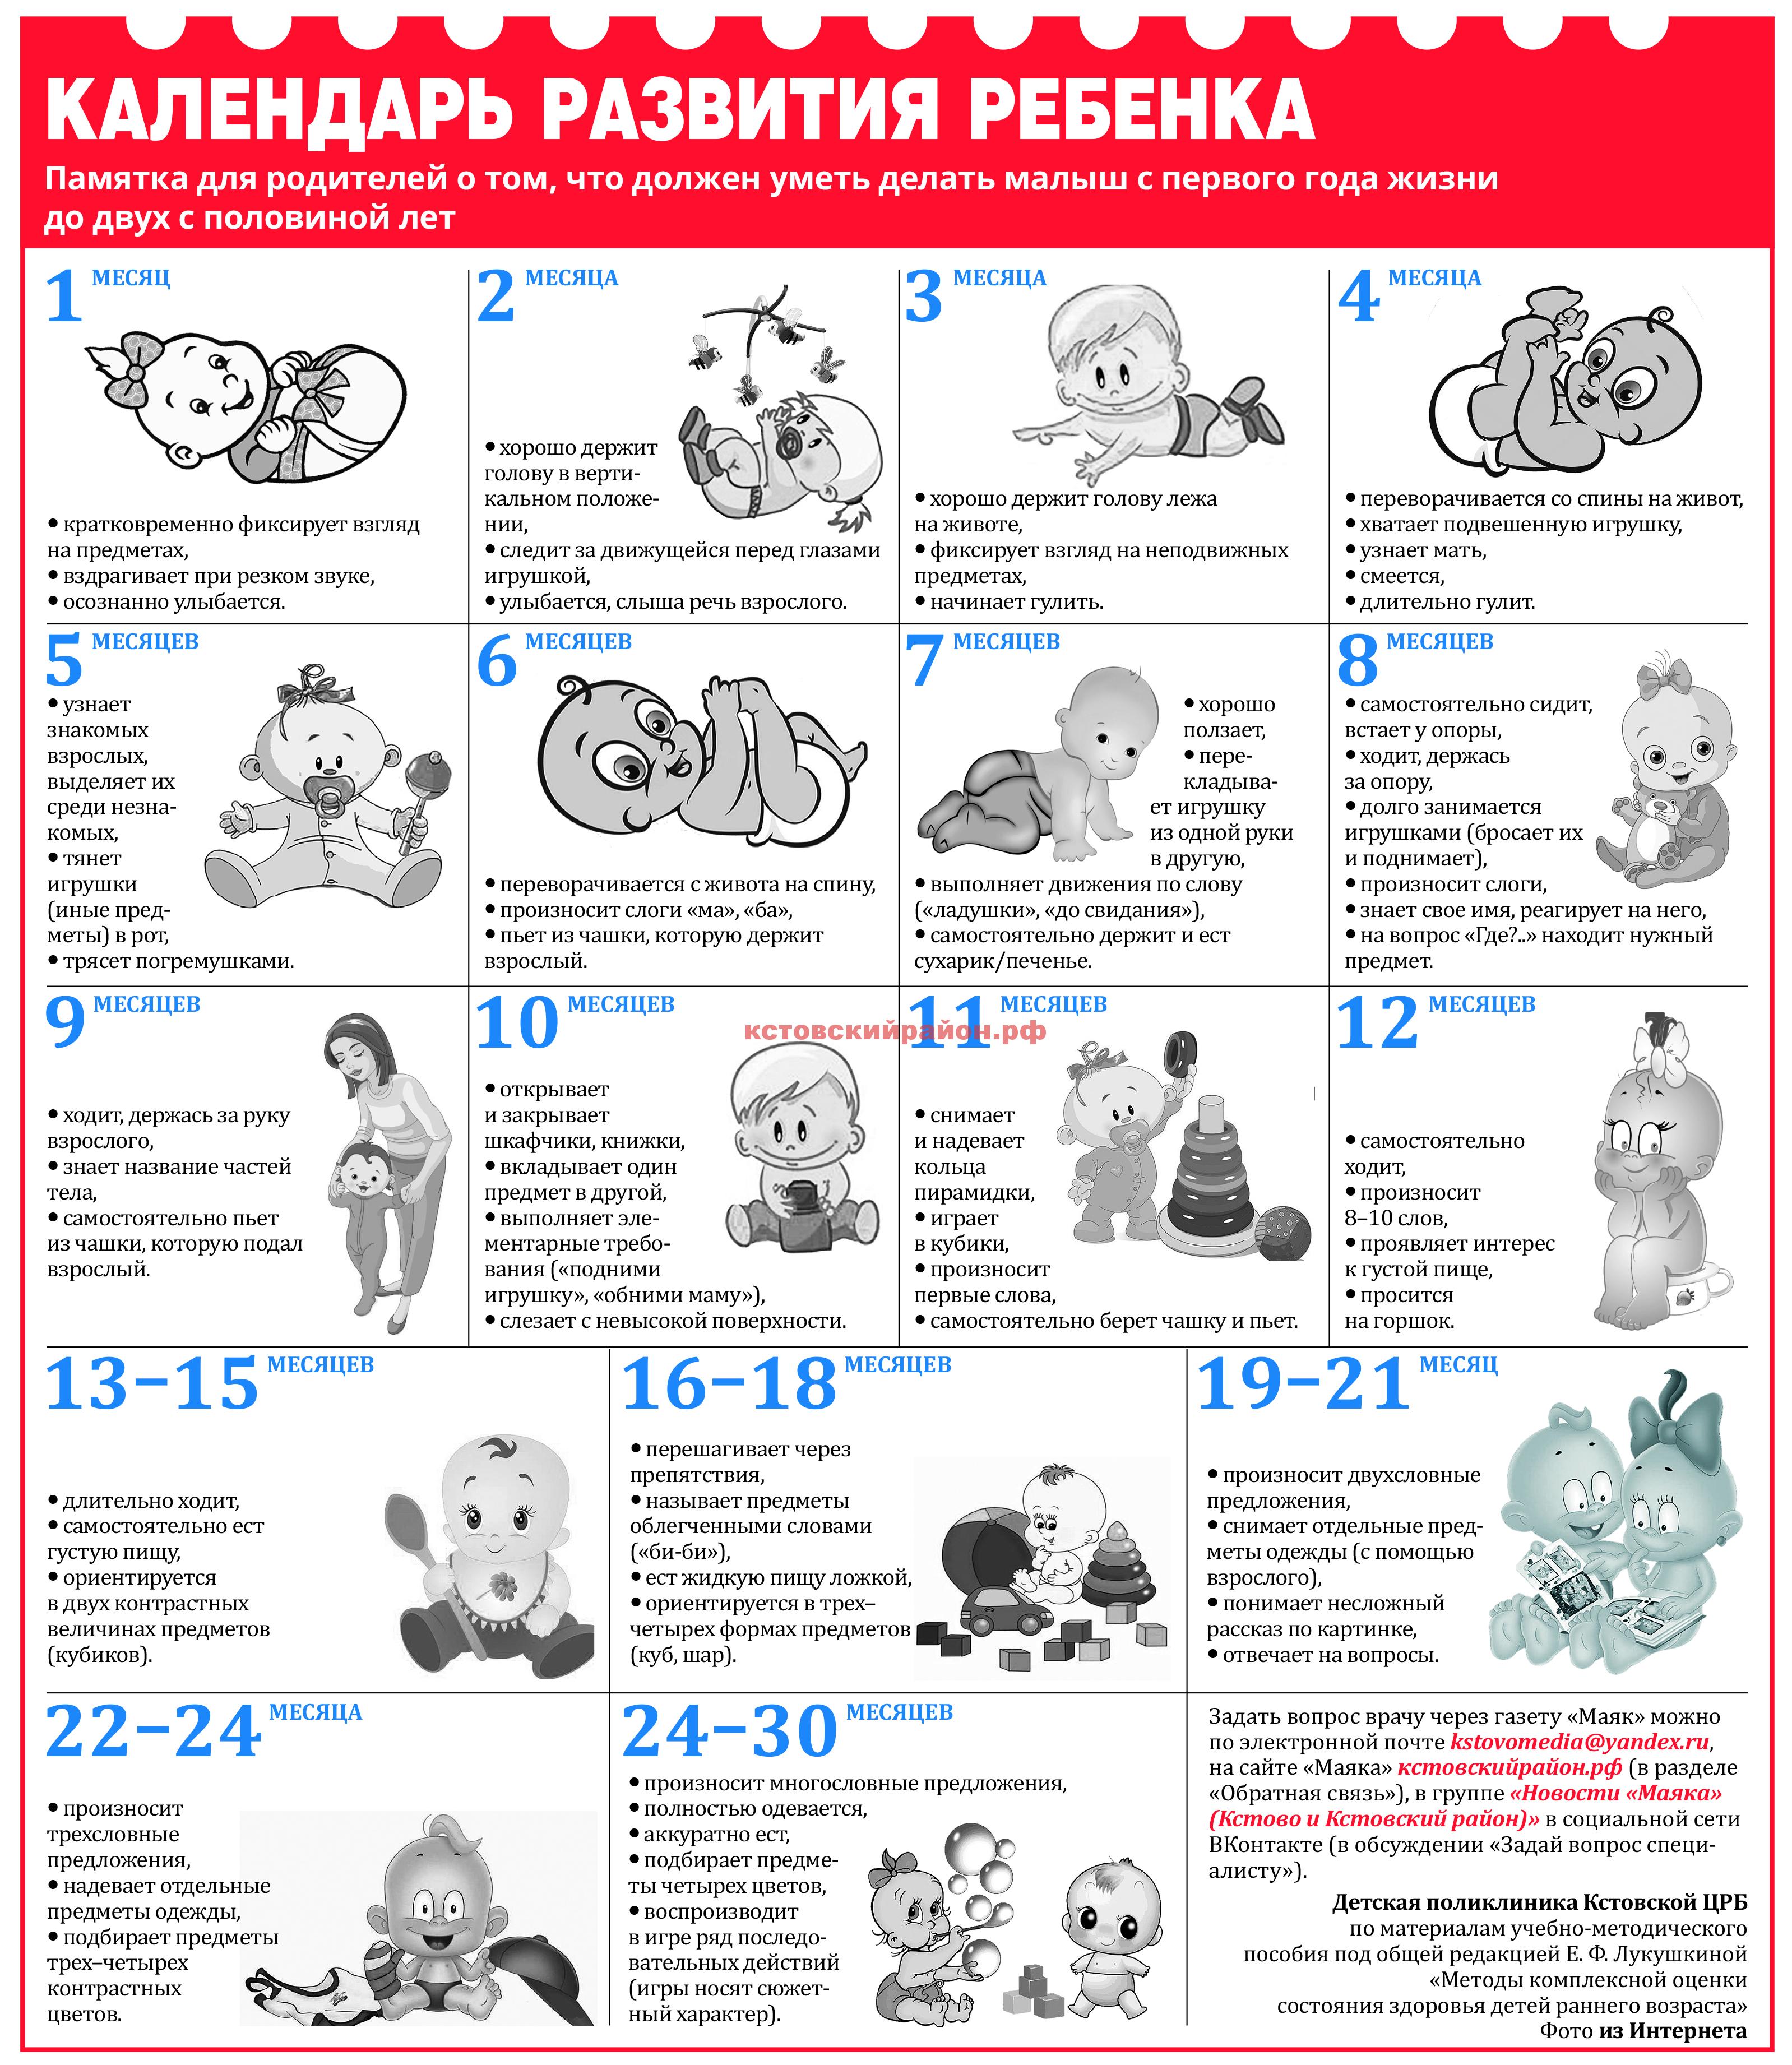 Развитие ребенка по месяцам до года: основные этапы и изменения в каждый период